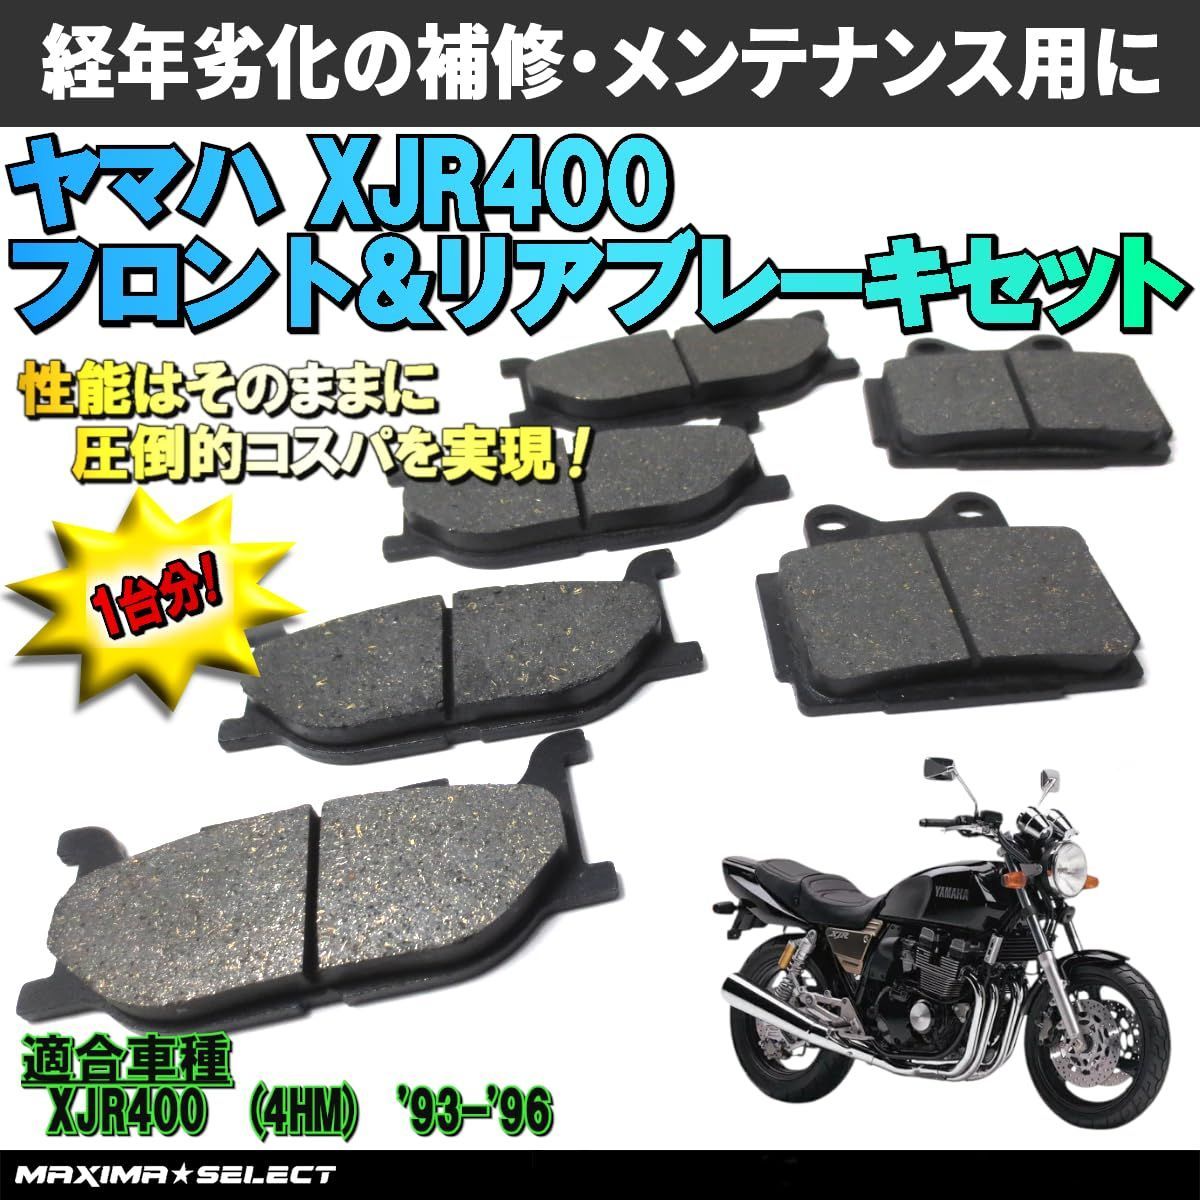 xjr400 パーツ 部品バイク - パーツ